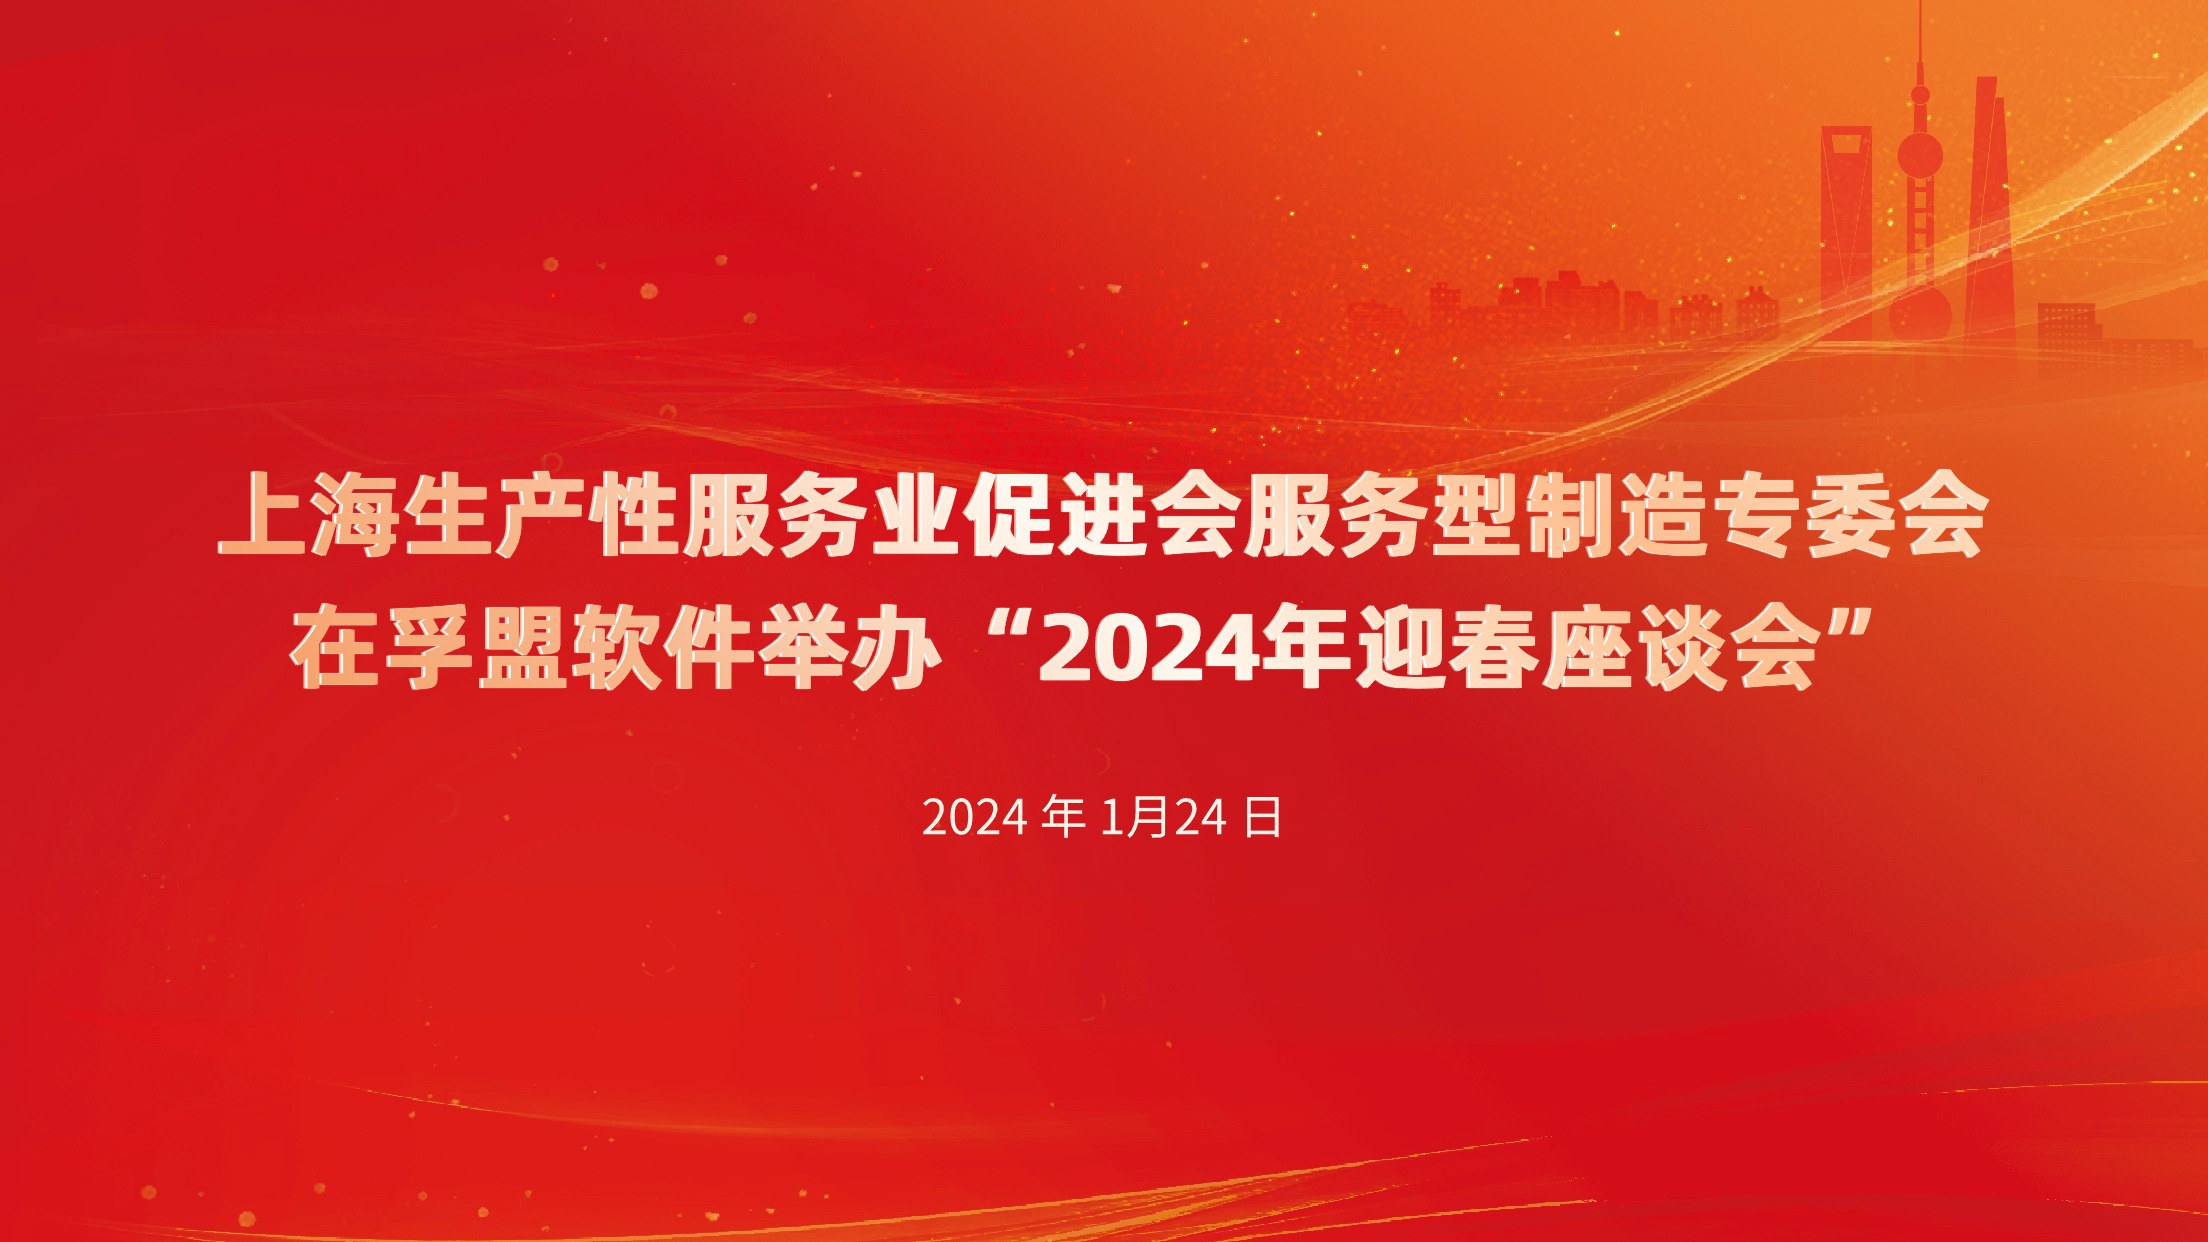 上海生产性服务业促进会服务型制造专委会在365Bet体育在线投注举办——“2024年迎春座谈会”